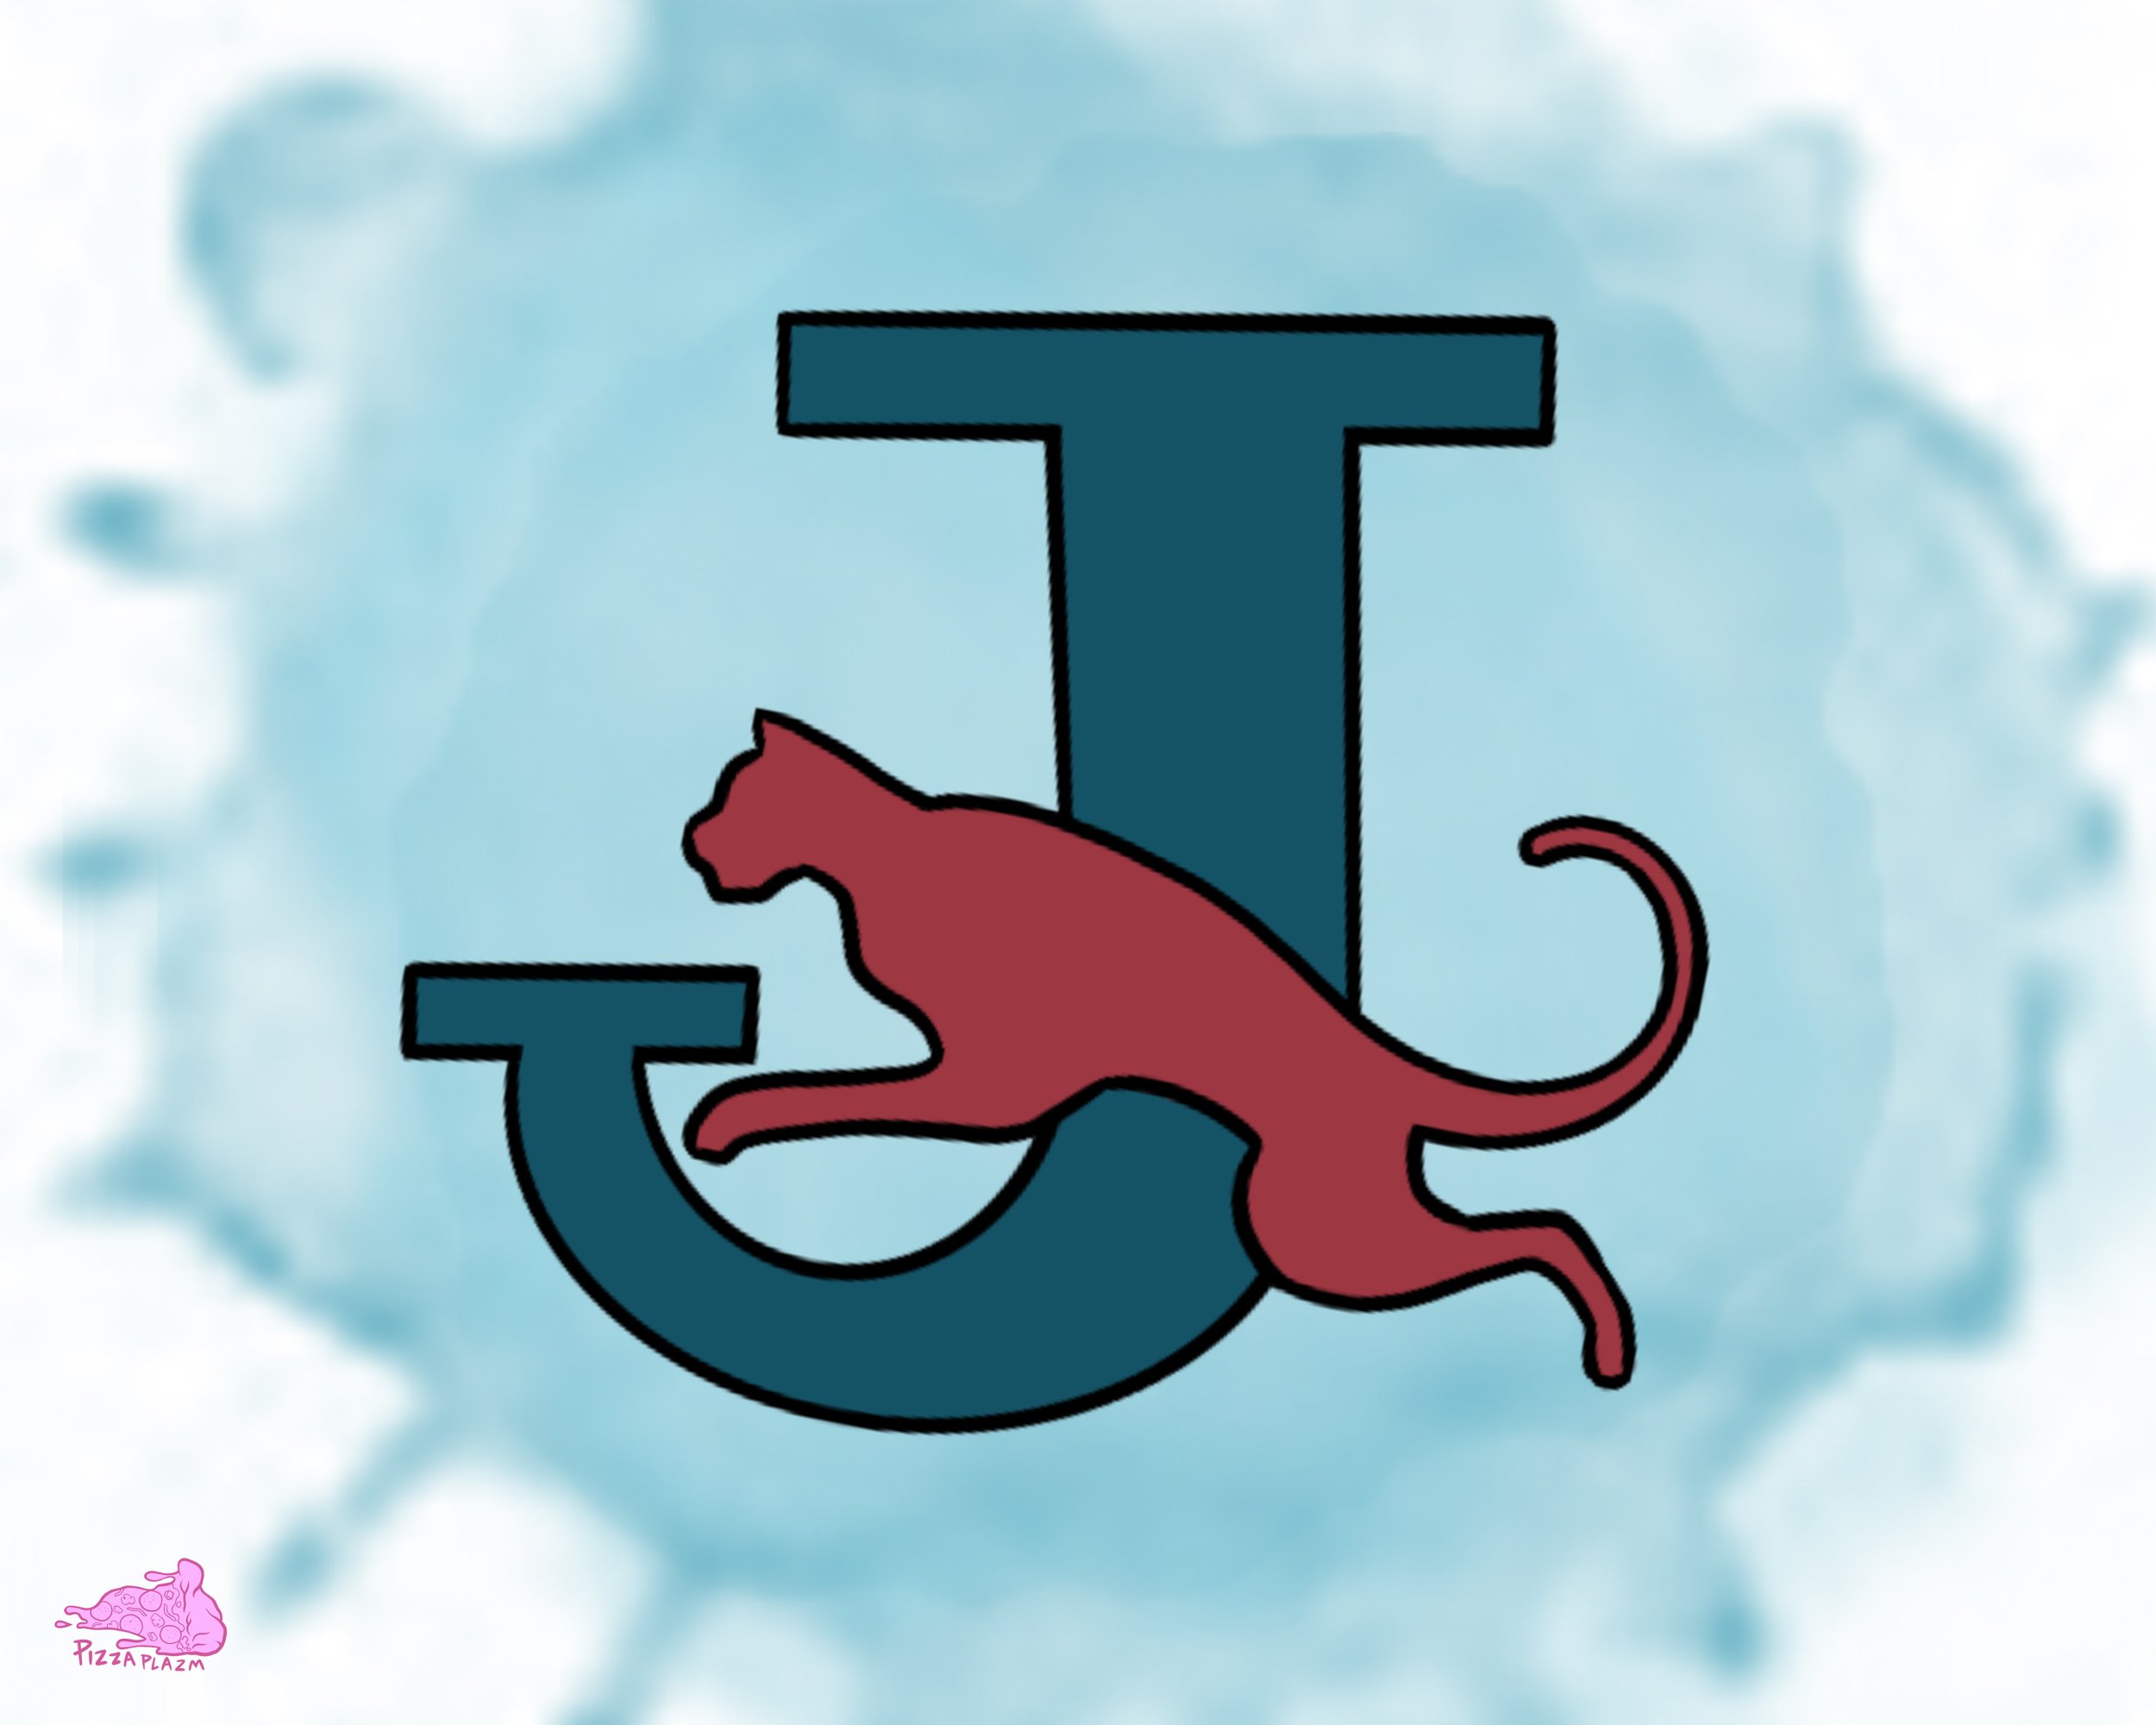 NY JAGUARS logo